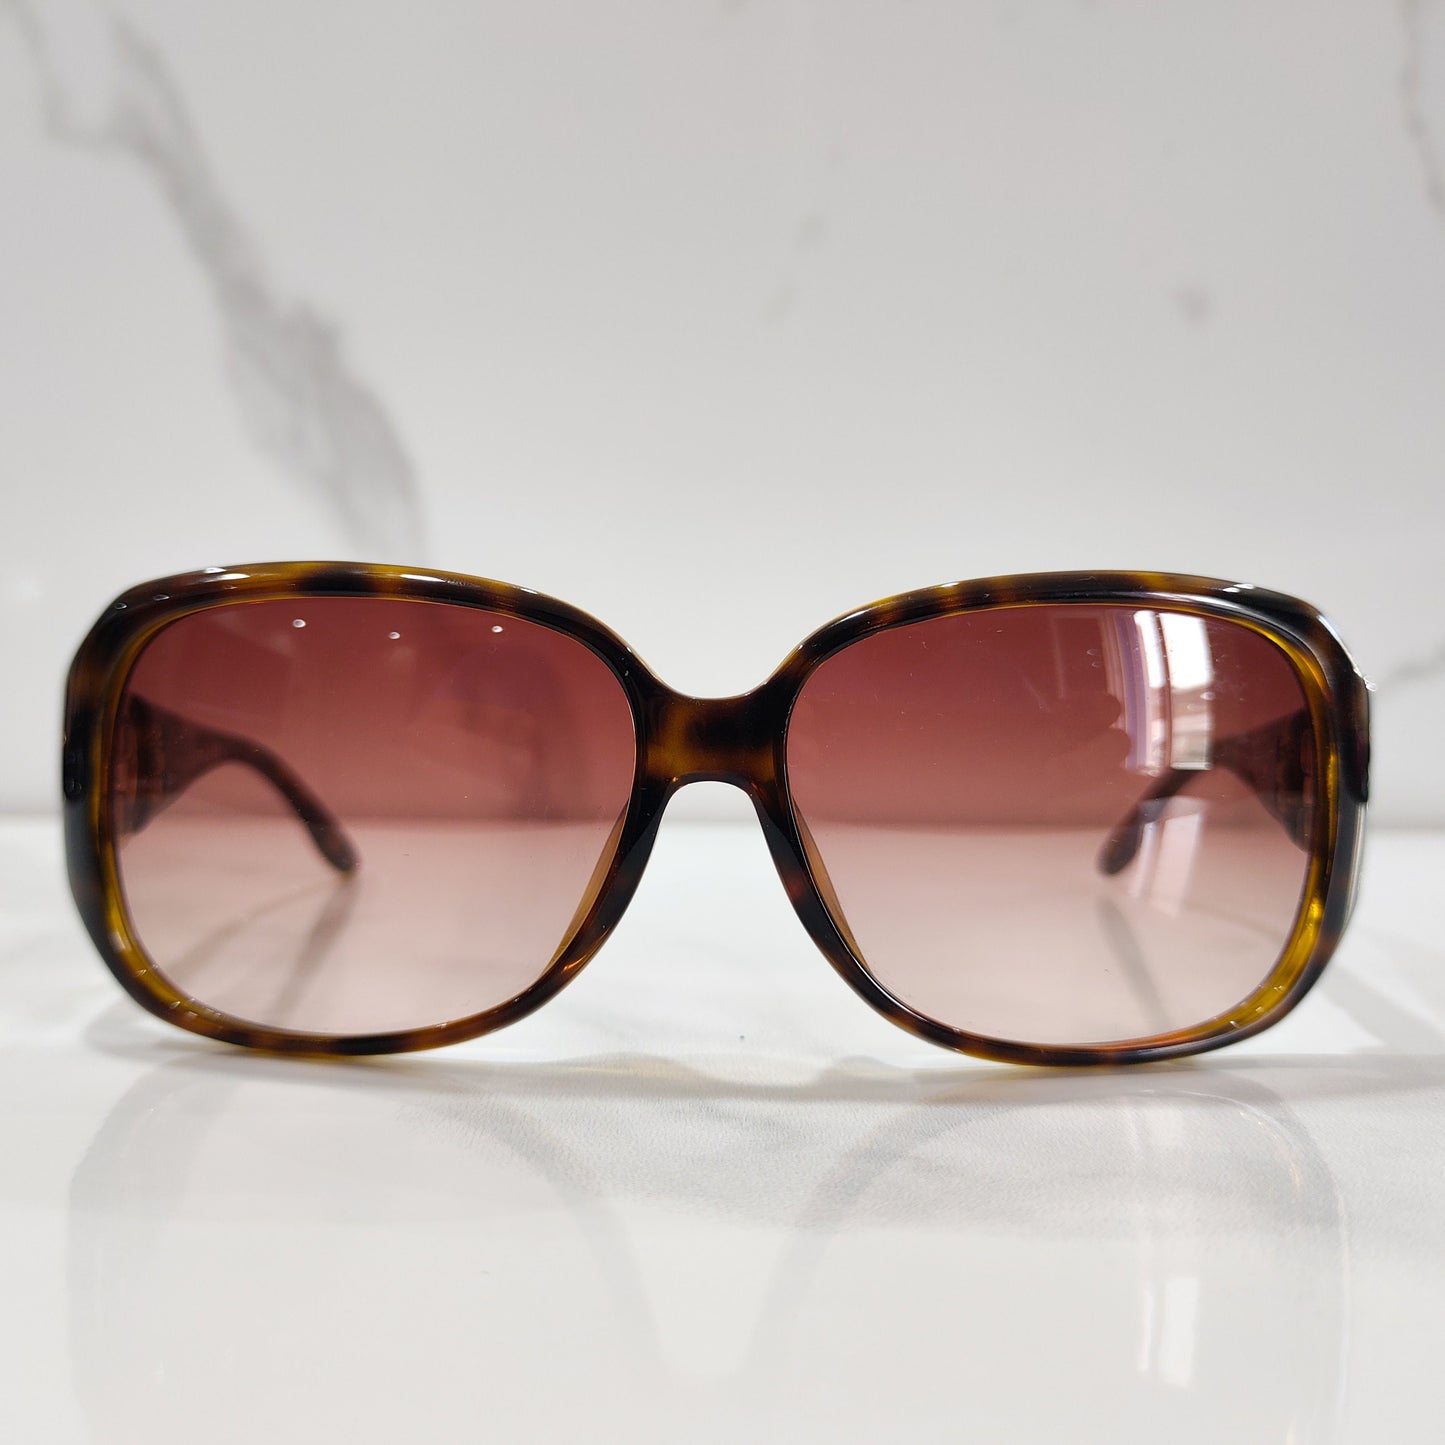 Gucci 3592 occhiali da sole vintage Swarovski occhiali lunette brille